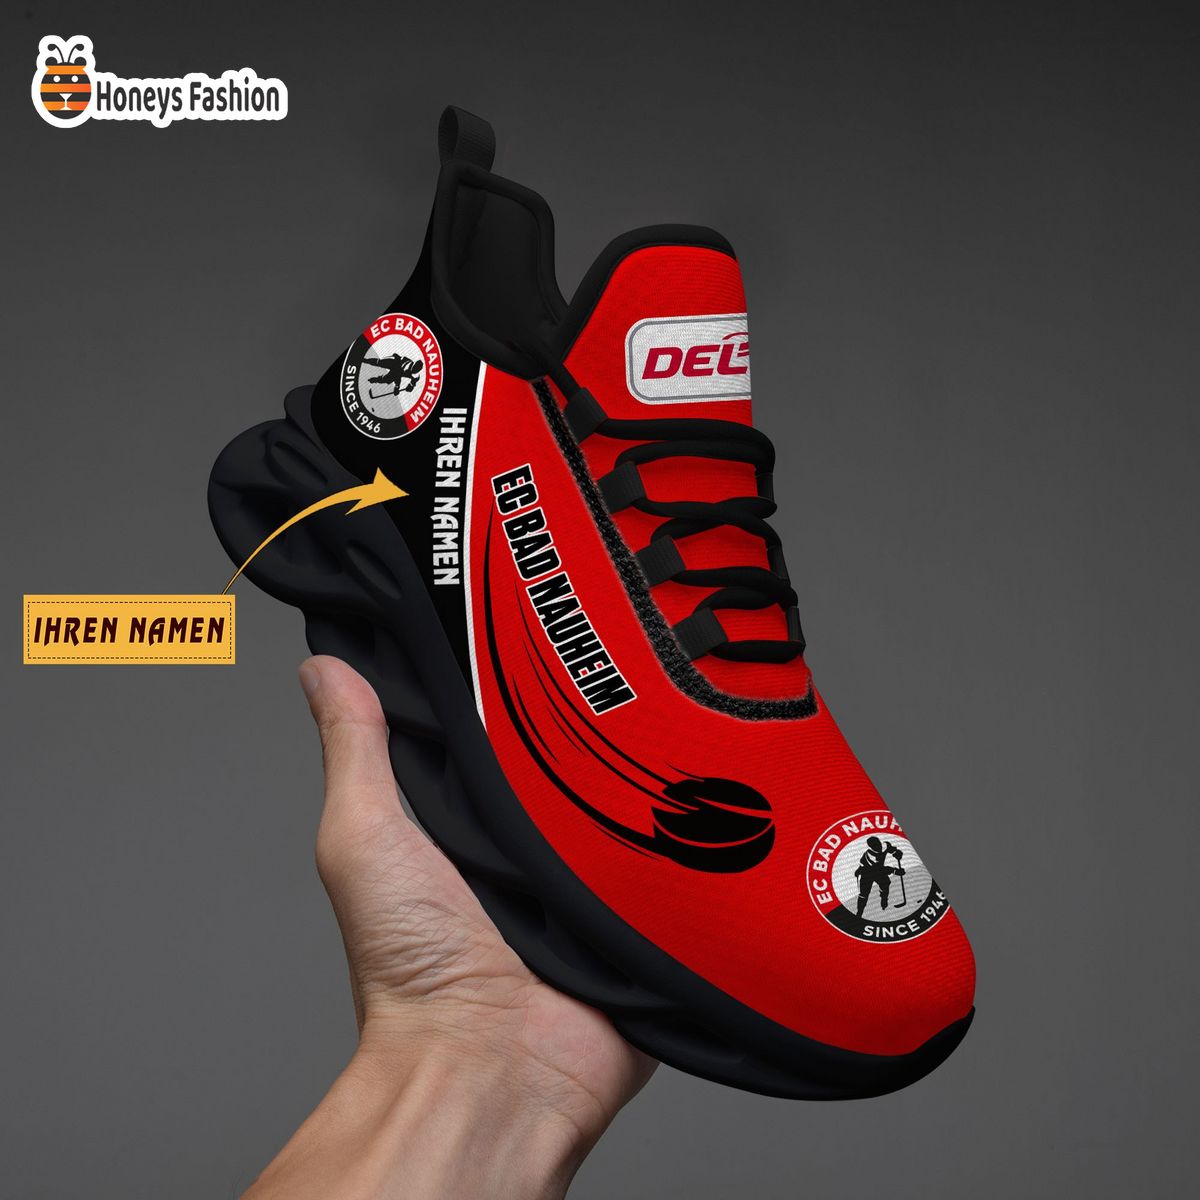 Rote Teufel Bad Nauheim DEL Ihren Namen Sneaker Schuhe